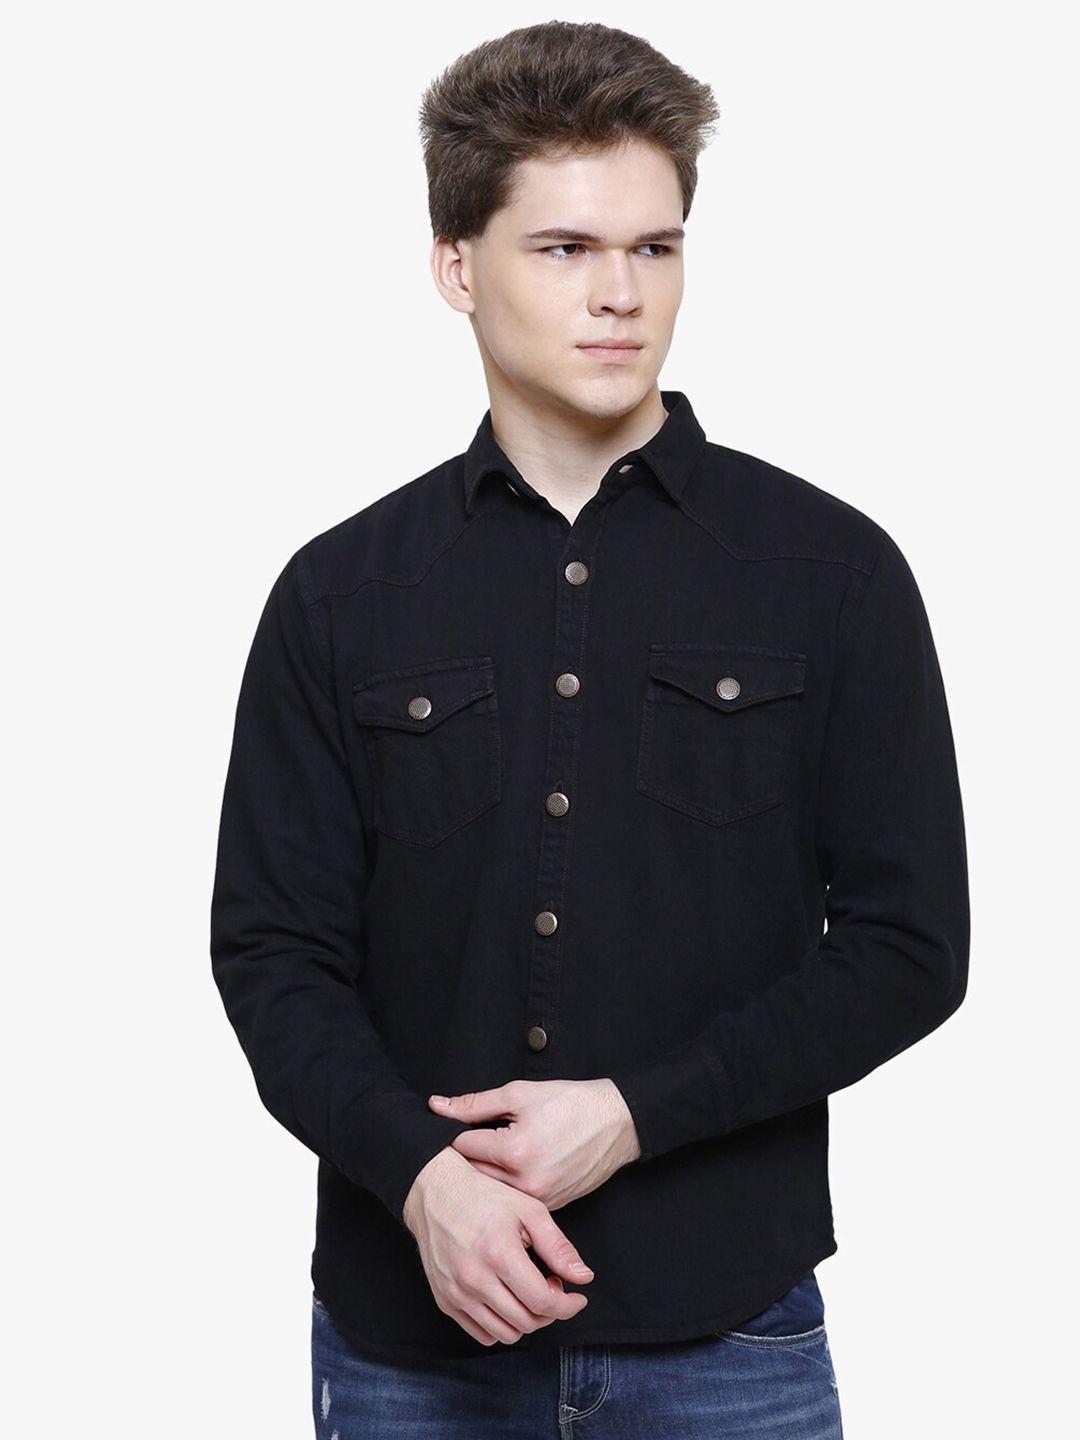 kuons avenue men black smart slim fit cotton casual shirt